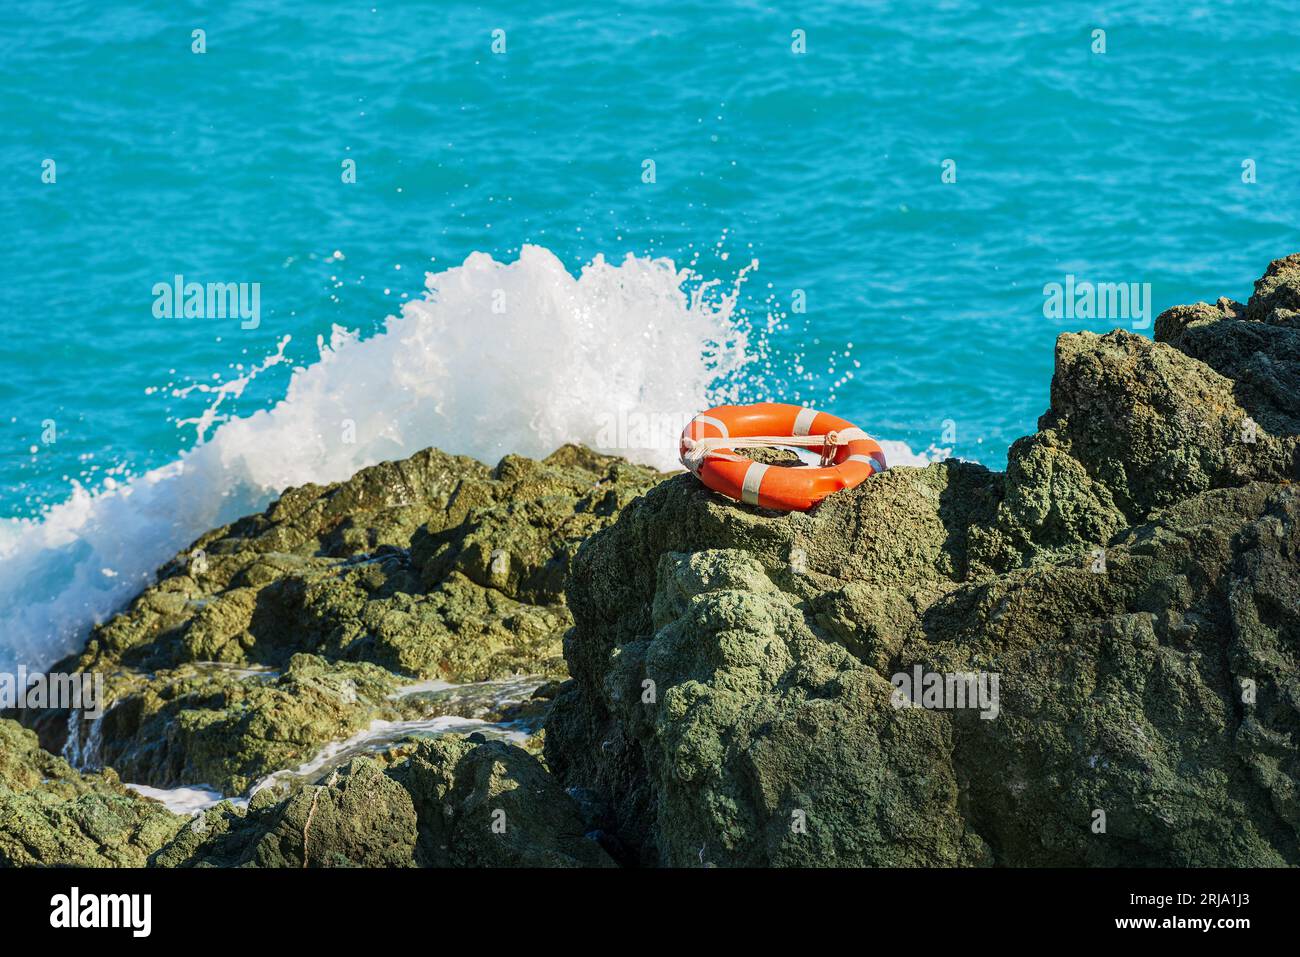 Boa arancione (boa ad anello) su una scogliera con mare blu e onde bianche sullo sfondo. Cinque Terre, provincia di la Spezia, Italia, Europa. Foto Stock